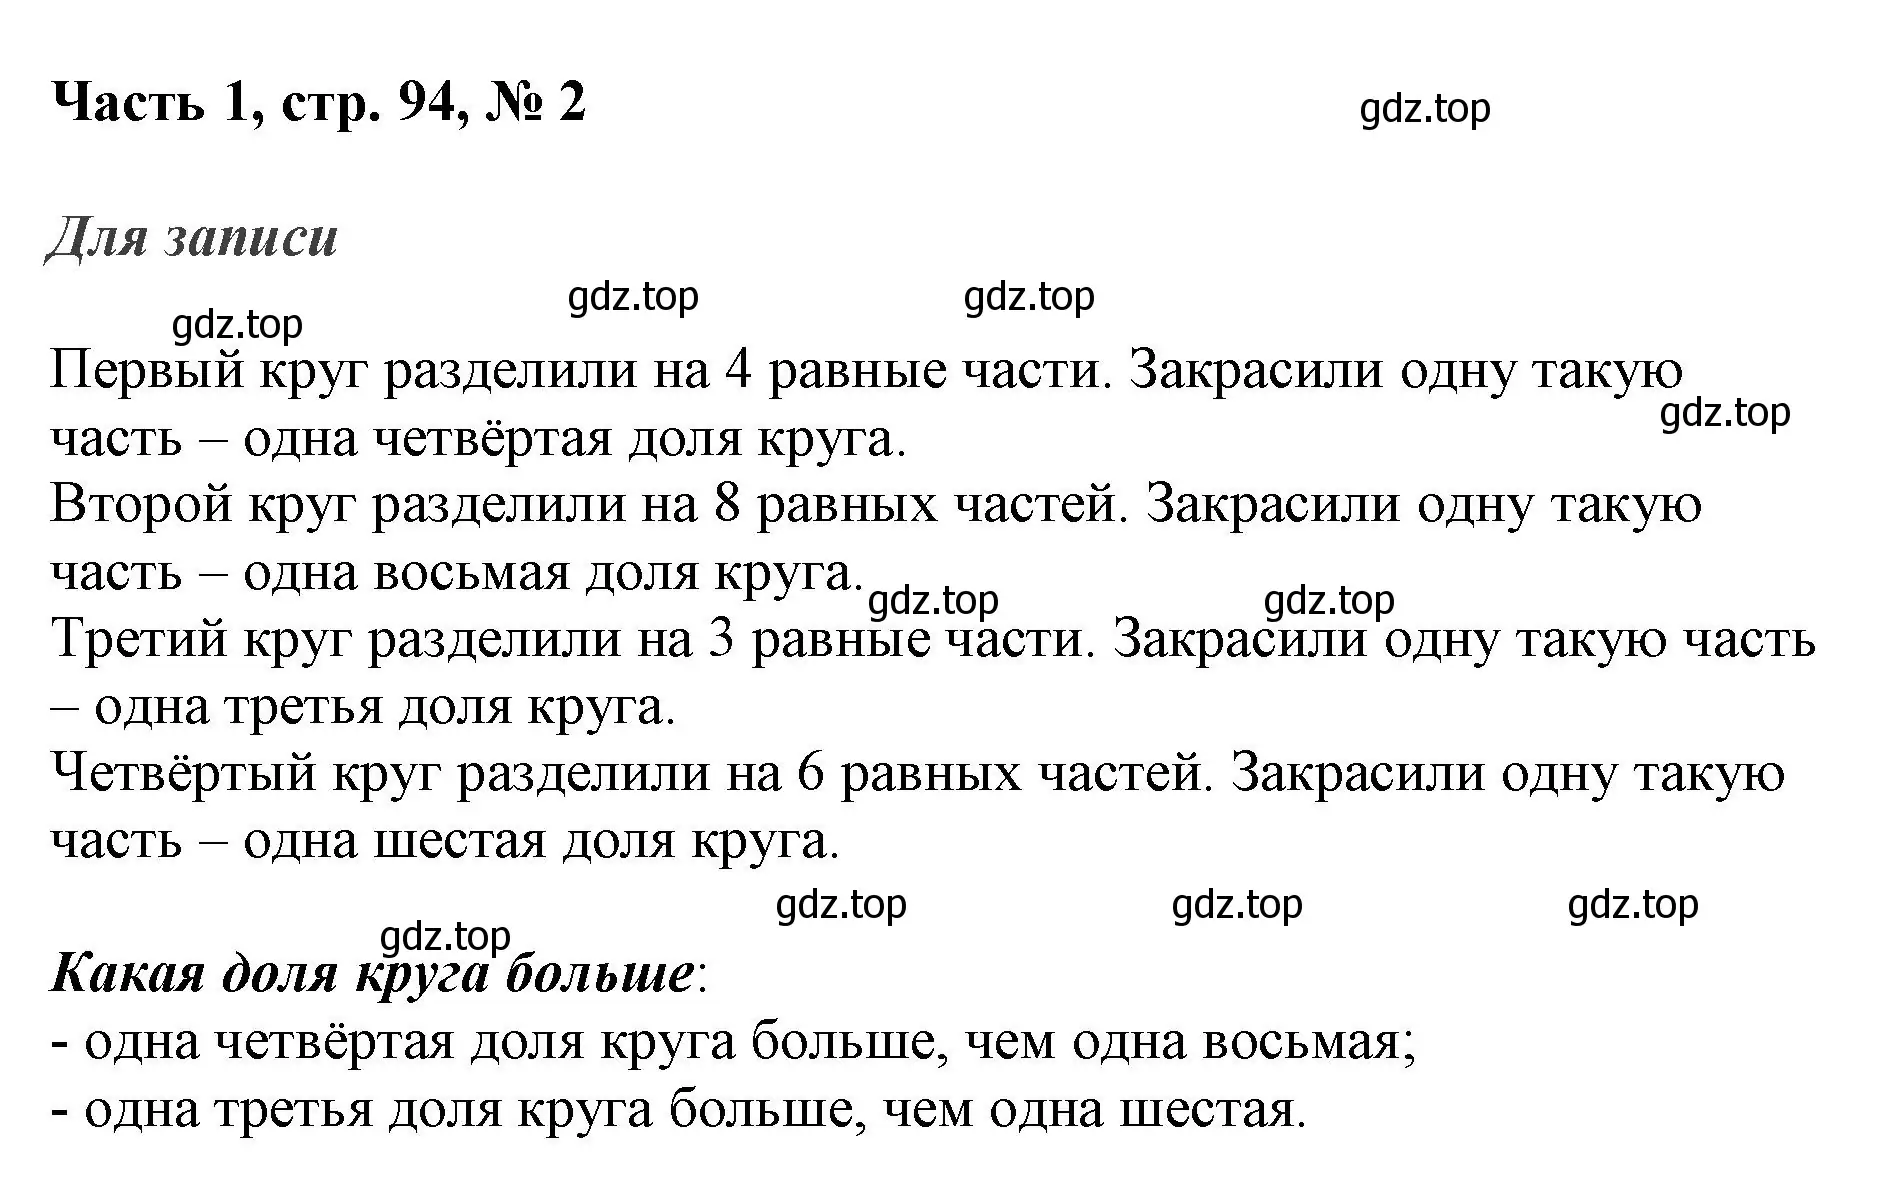 Решение номер 2 (страница 94) гдз по математике 3 класс Моро, Бантова, учебник 1 часть